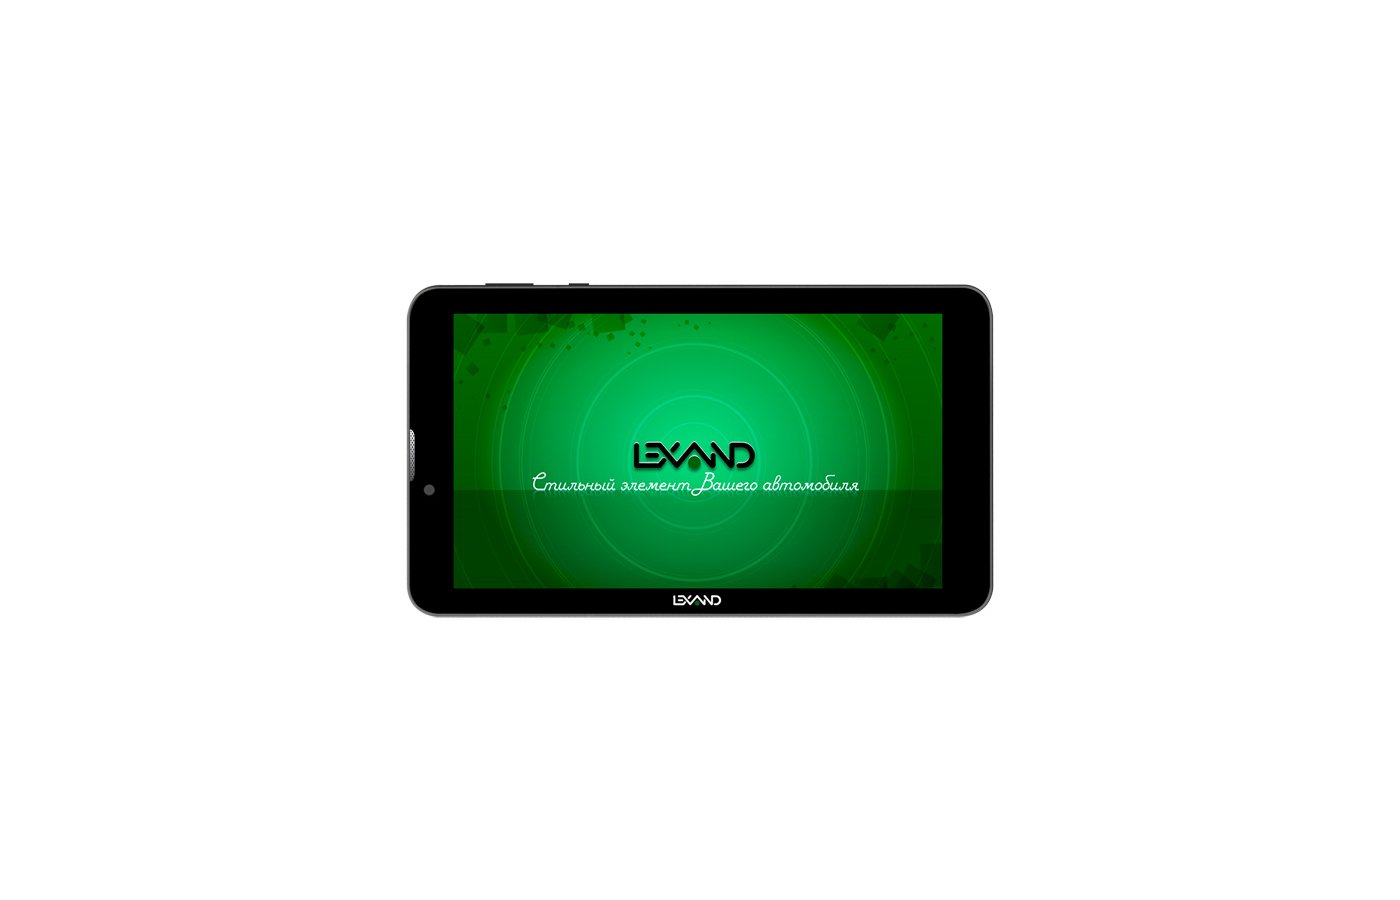 Lexand sc7 pro hd: недорогой автомобильный планшет